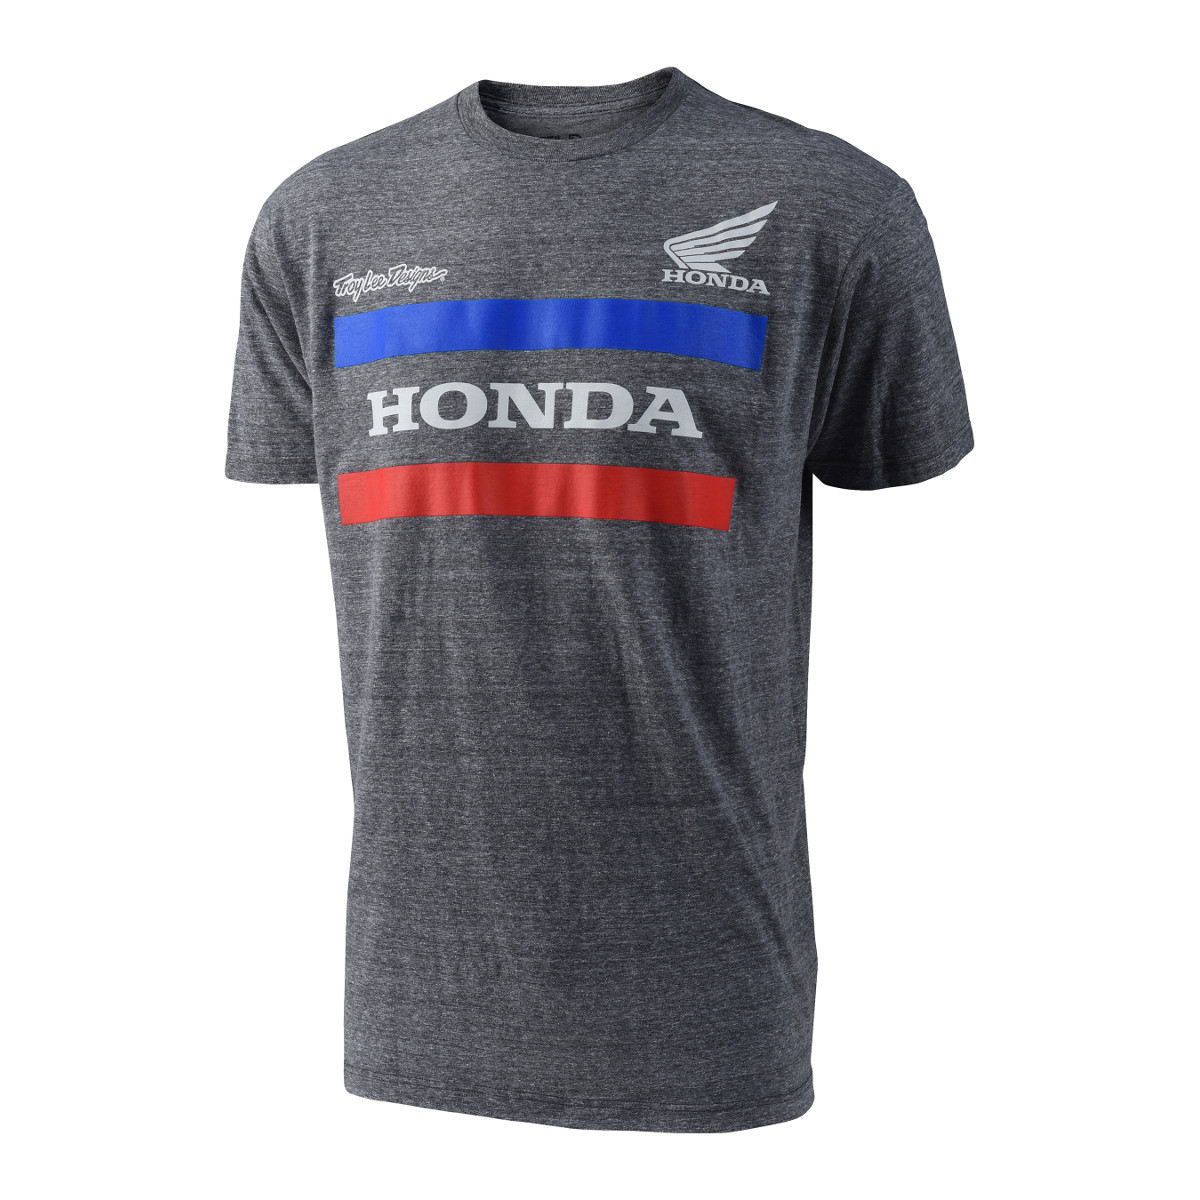 Troy Lee Designs T-Shirt Honda Grau